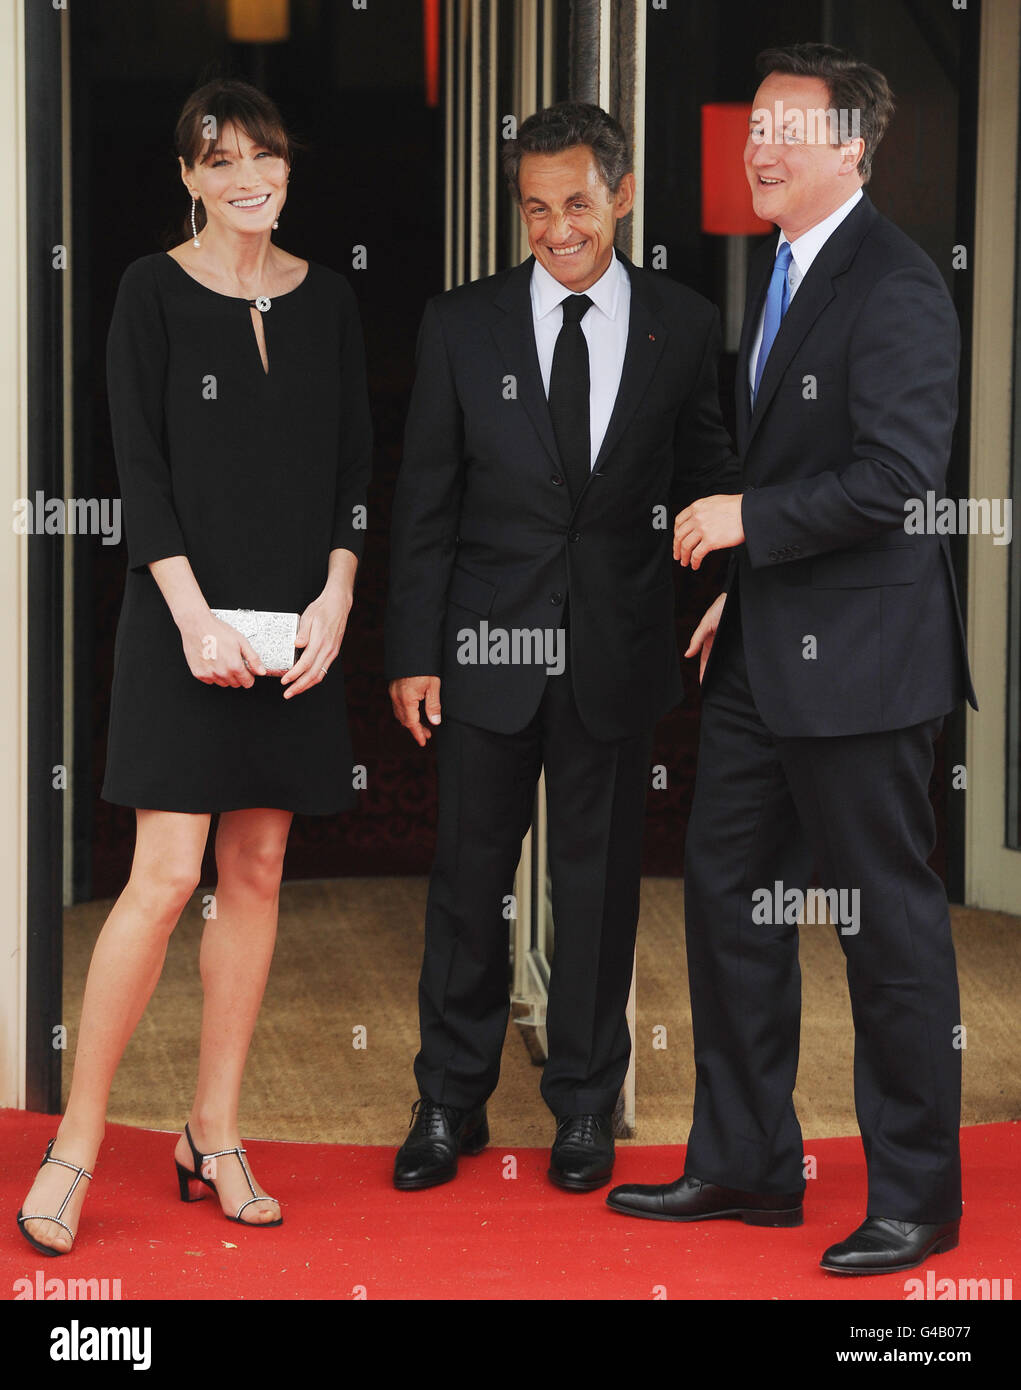 Il presidente francese Nicolas Sarkozy e sua moglie Carla Bruni salutano il primo ministro britannico David Cameron (destra) e gli altri leader del G8, che si uniranno a loro per cena alla fine della prima giornata del G8, a Deaville, in Francia. Foto Stock